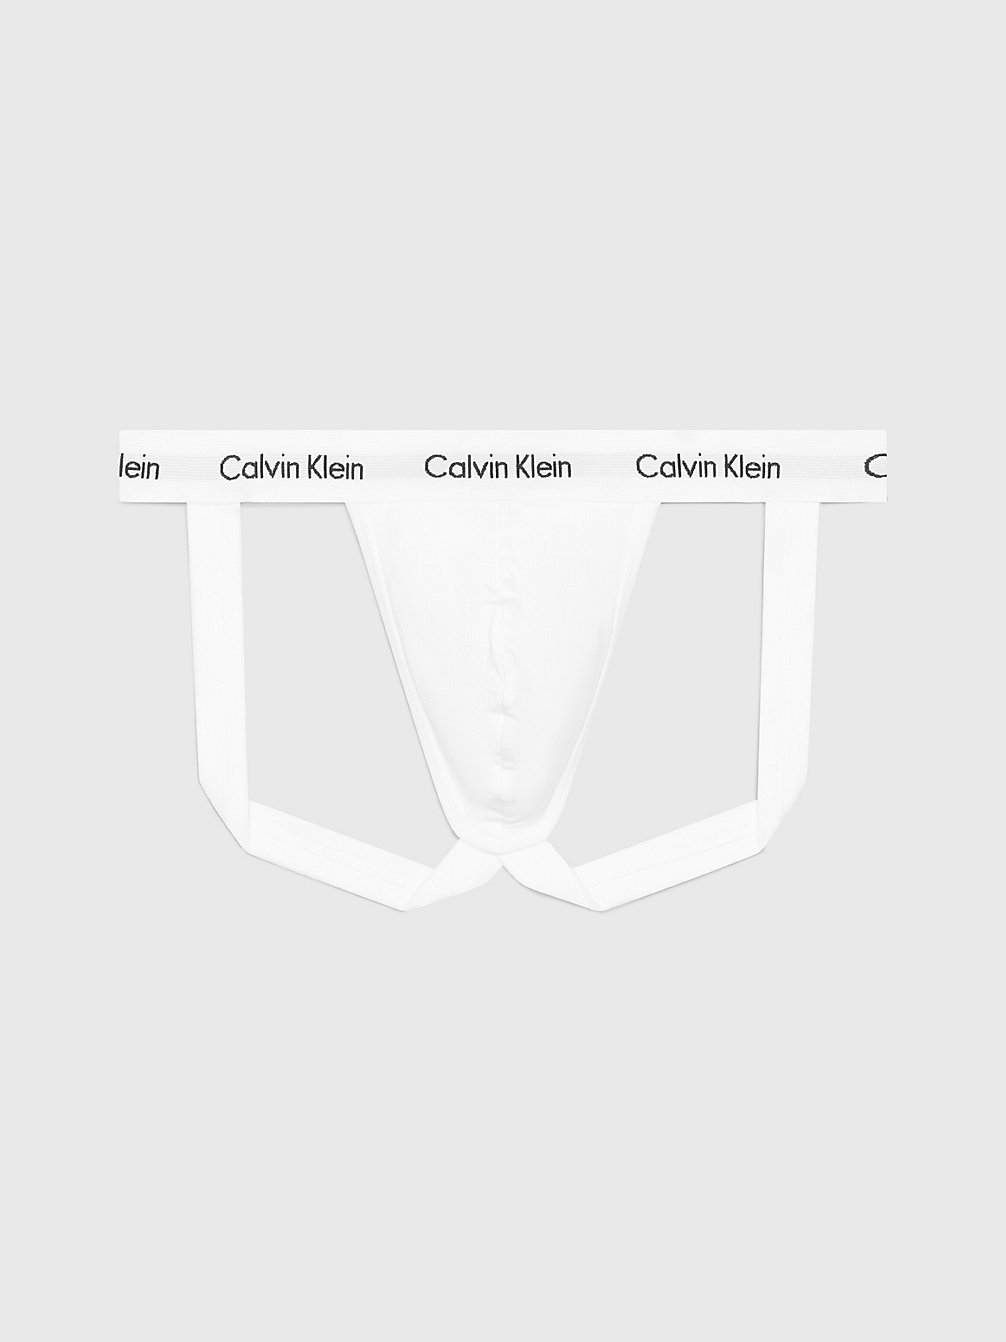 Suspensorio - CK Deconstructed > WHITE > undefined hombre > Calvin Klein